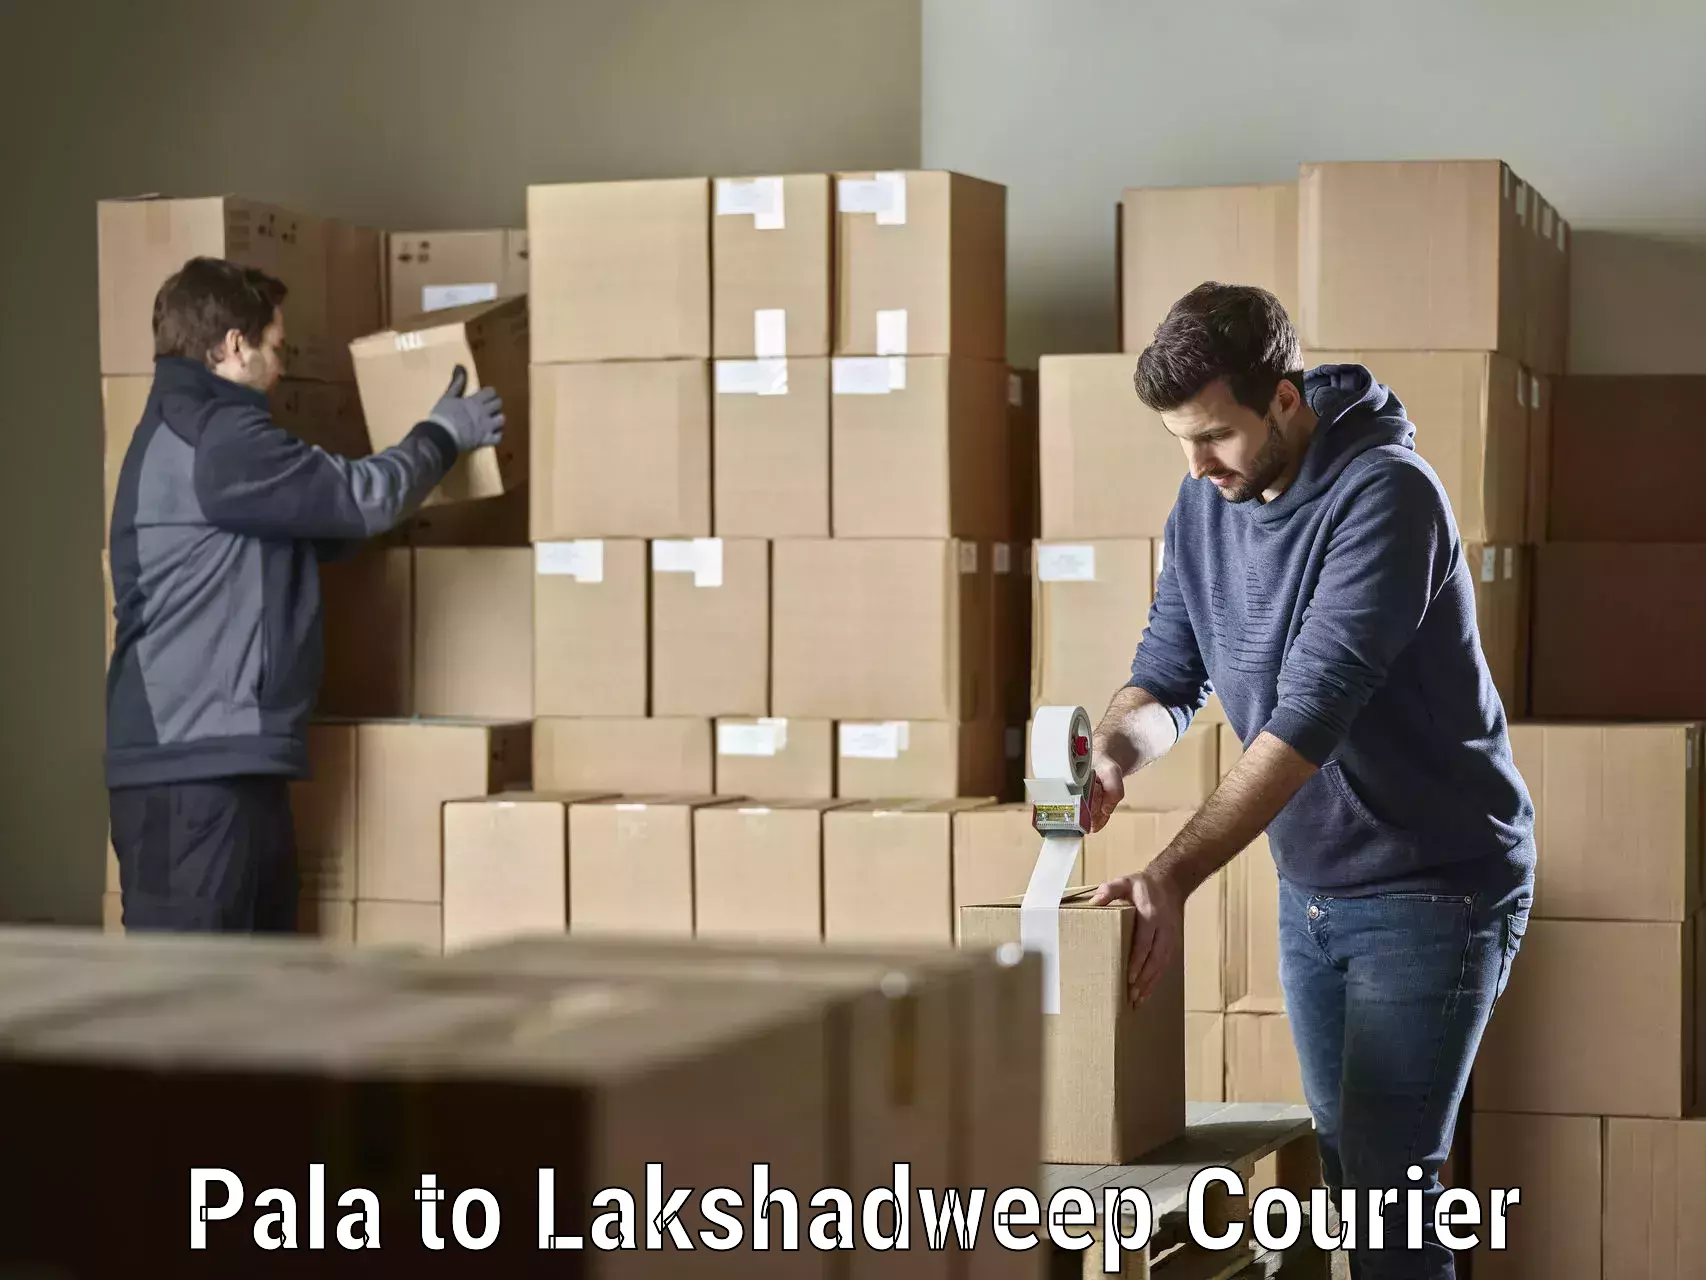 Customer-centric shipping Pala to Lakshadweep